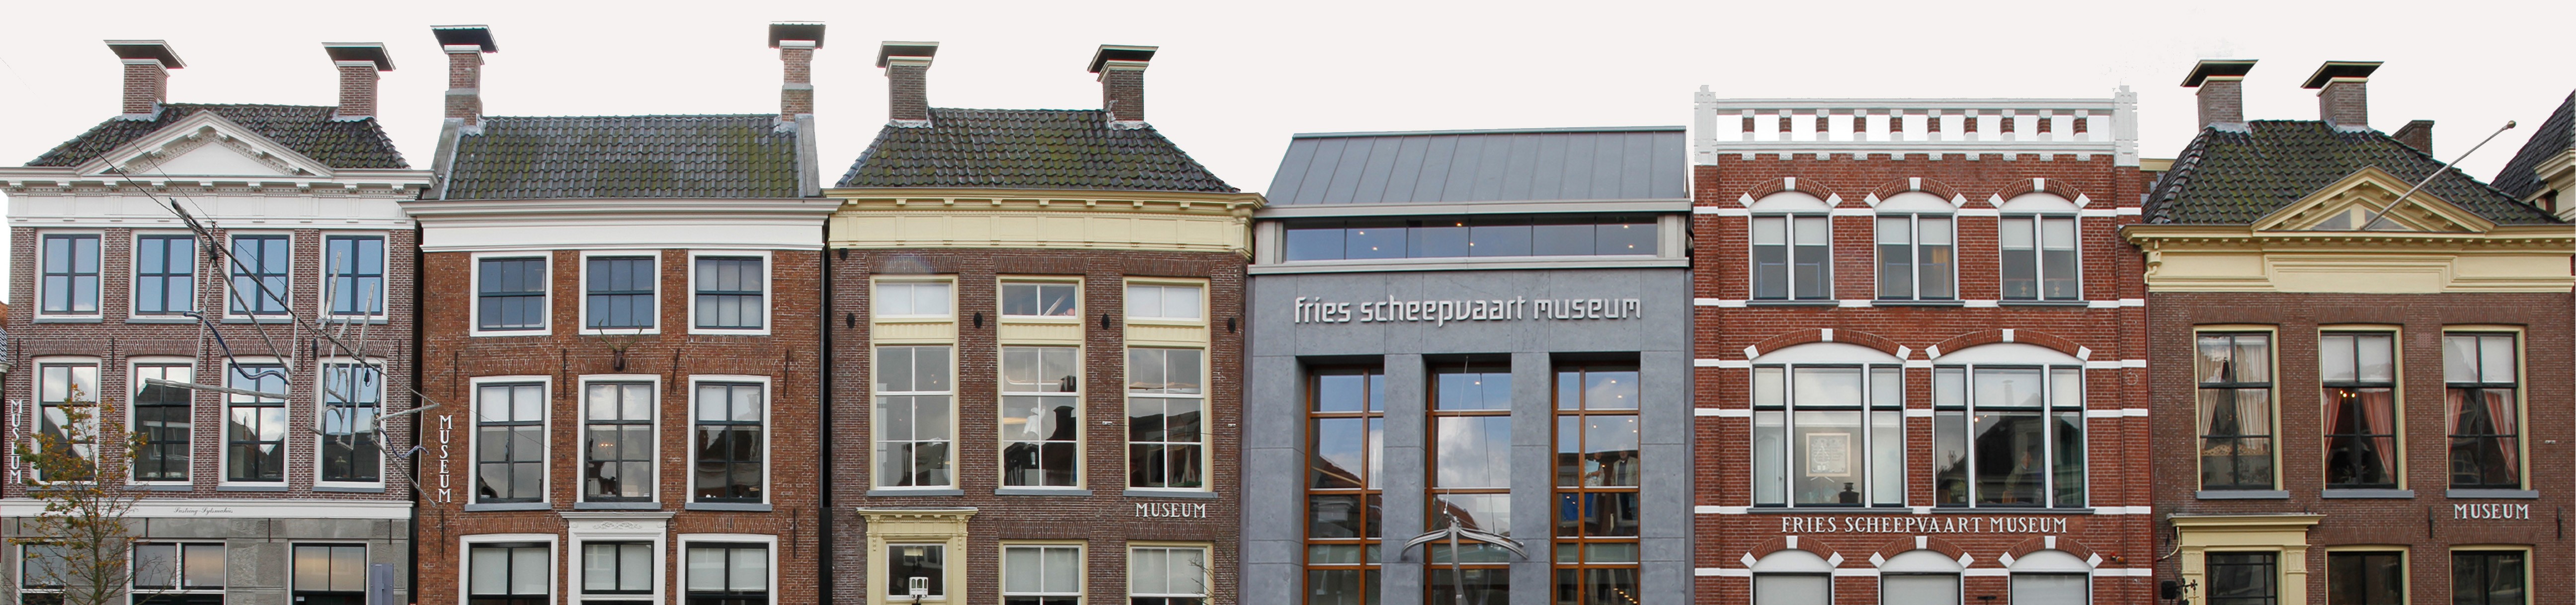 gevels Fries Scheepvaart Museum